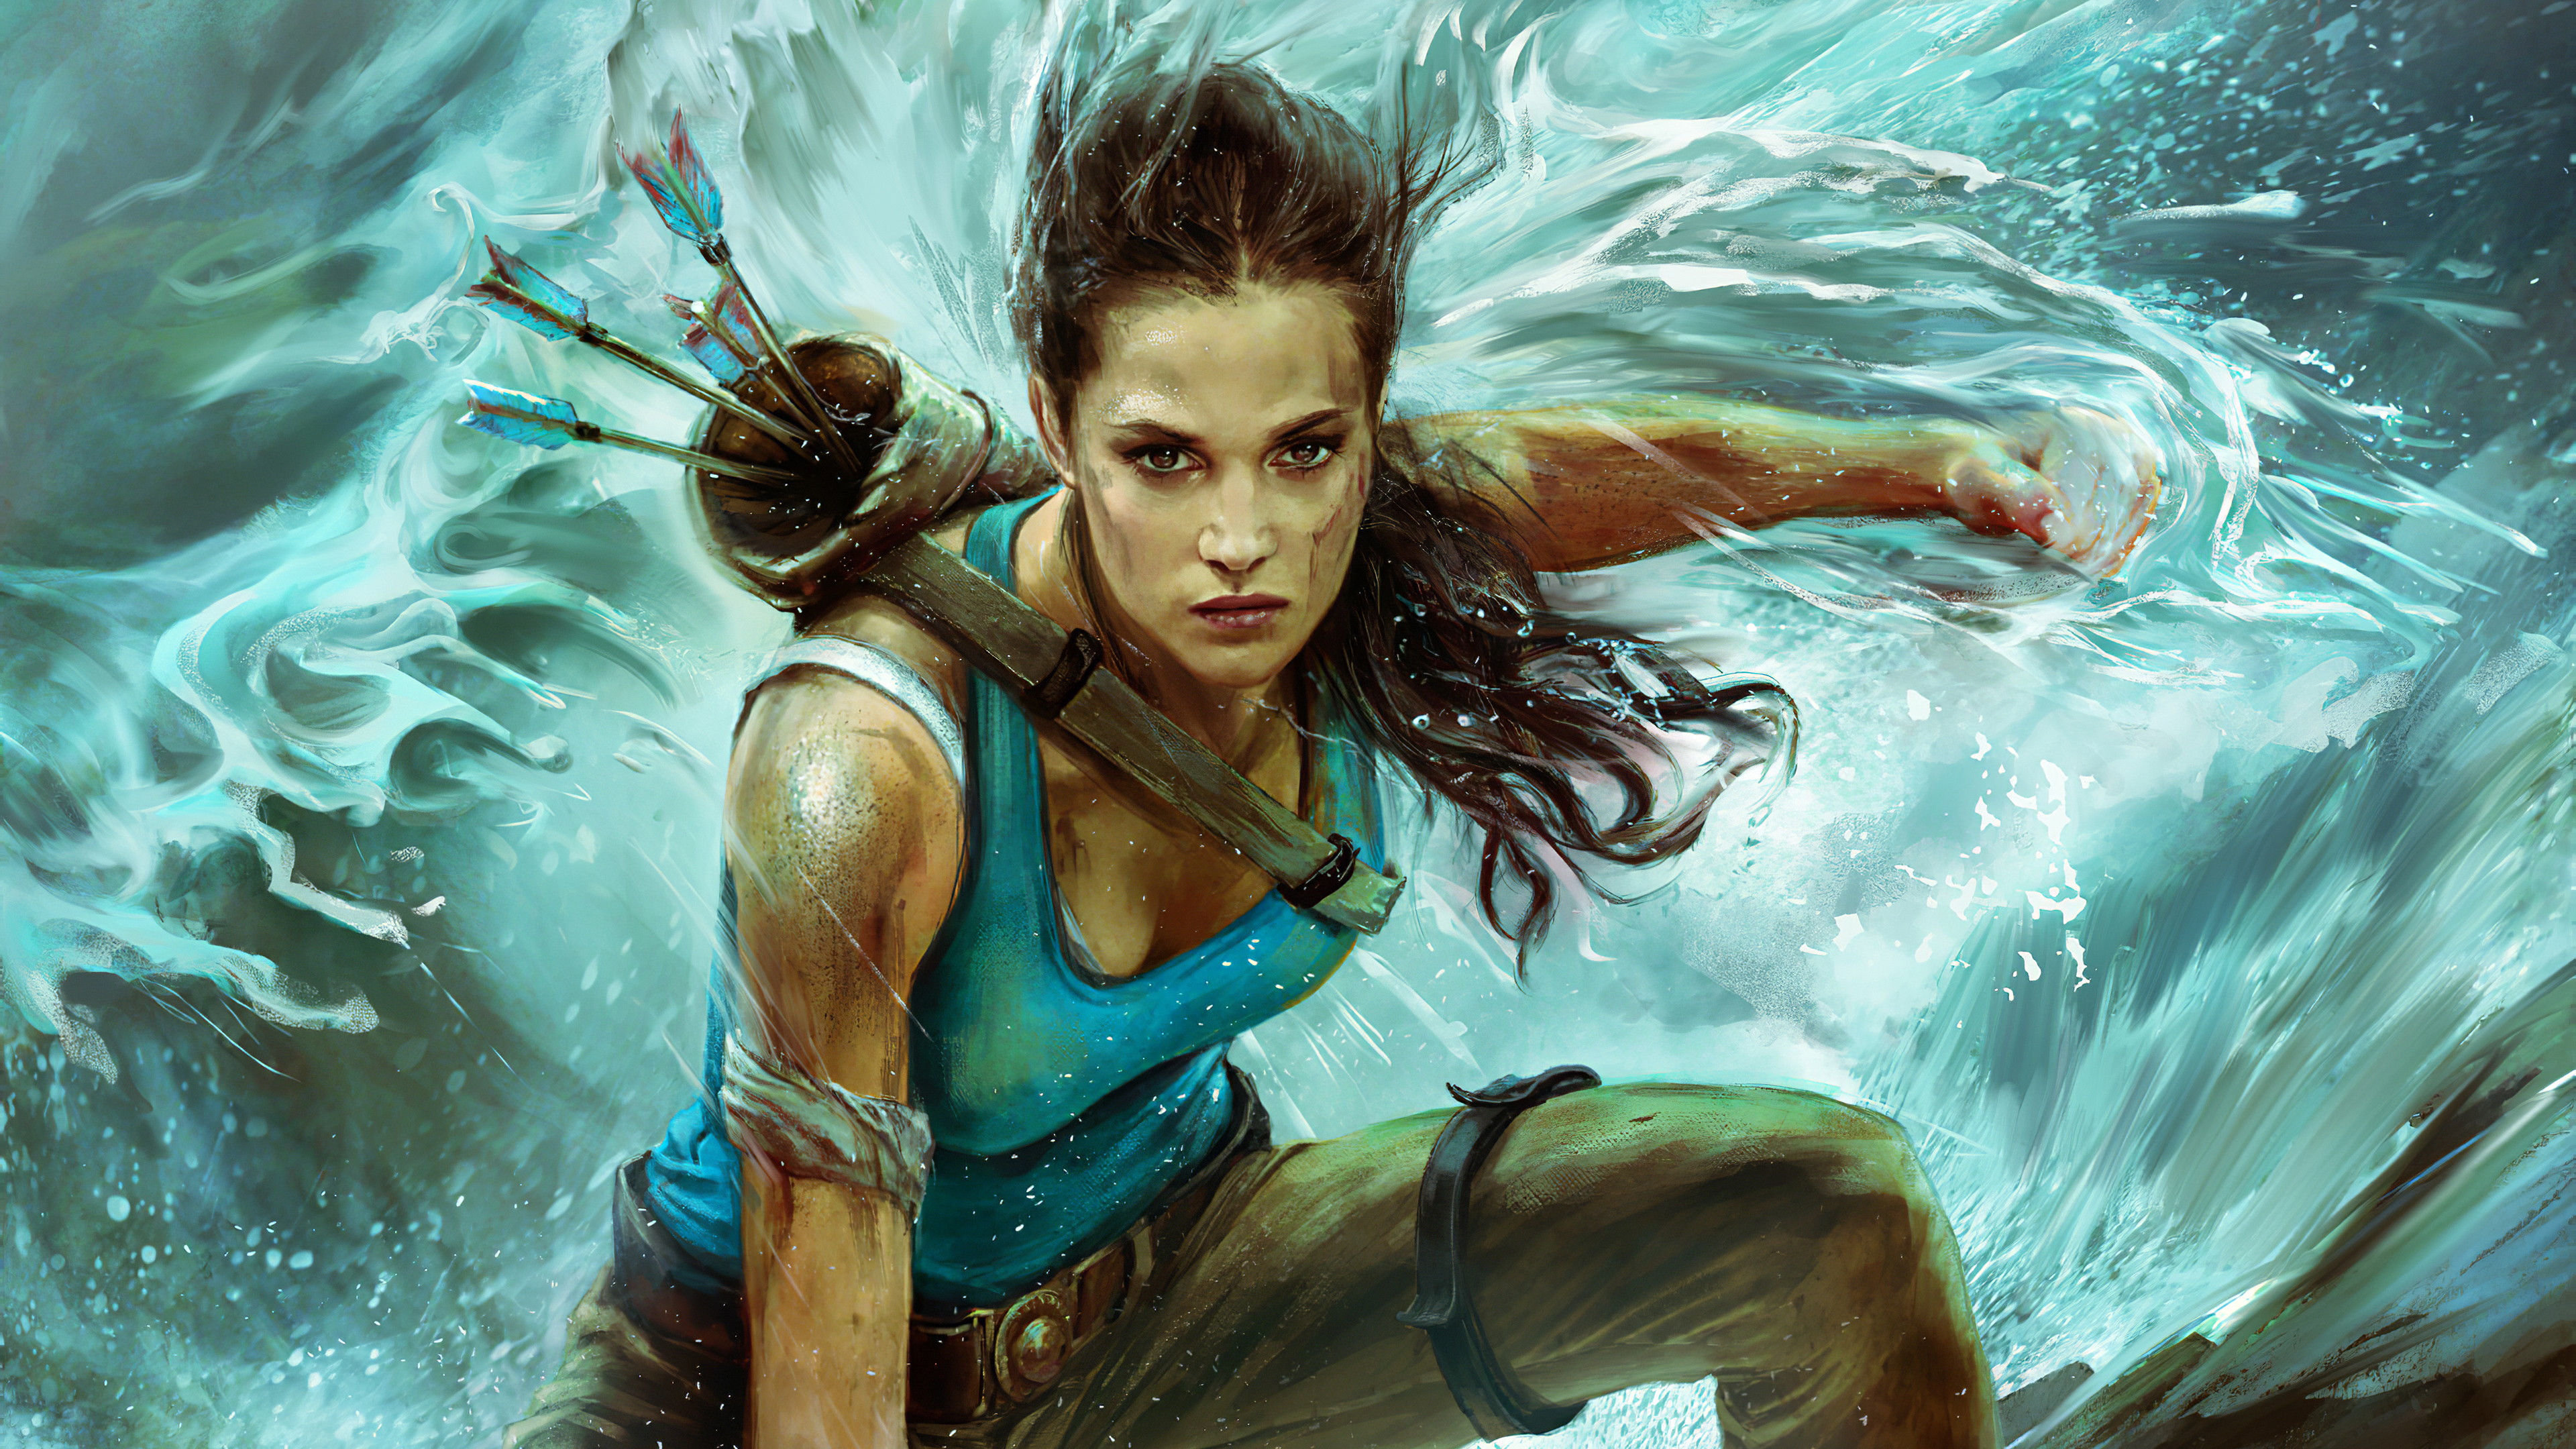 Lara Croft Tomb Raider Artwork
 Wallpapers